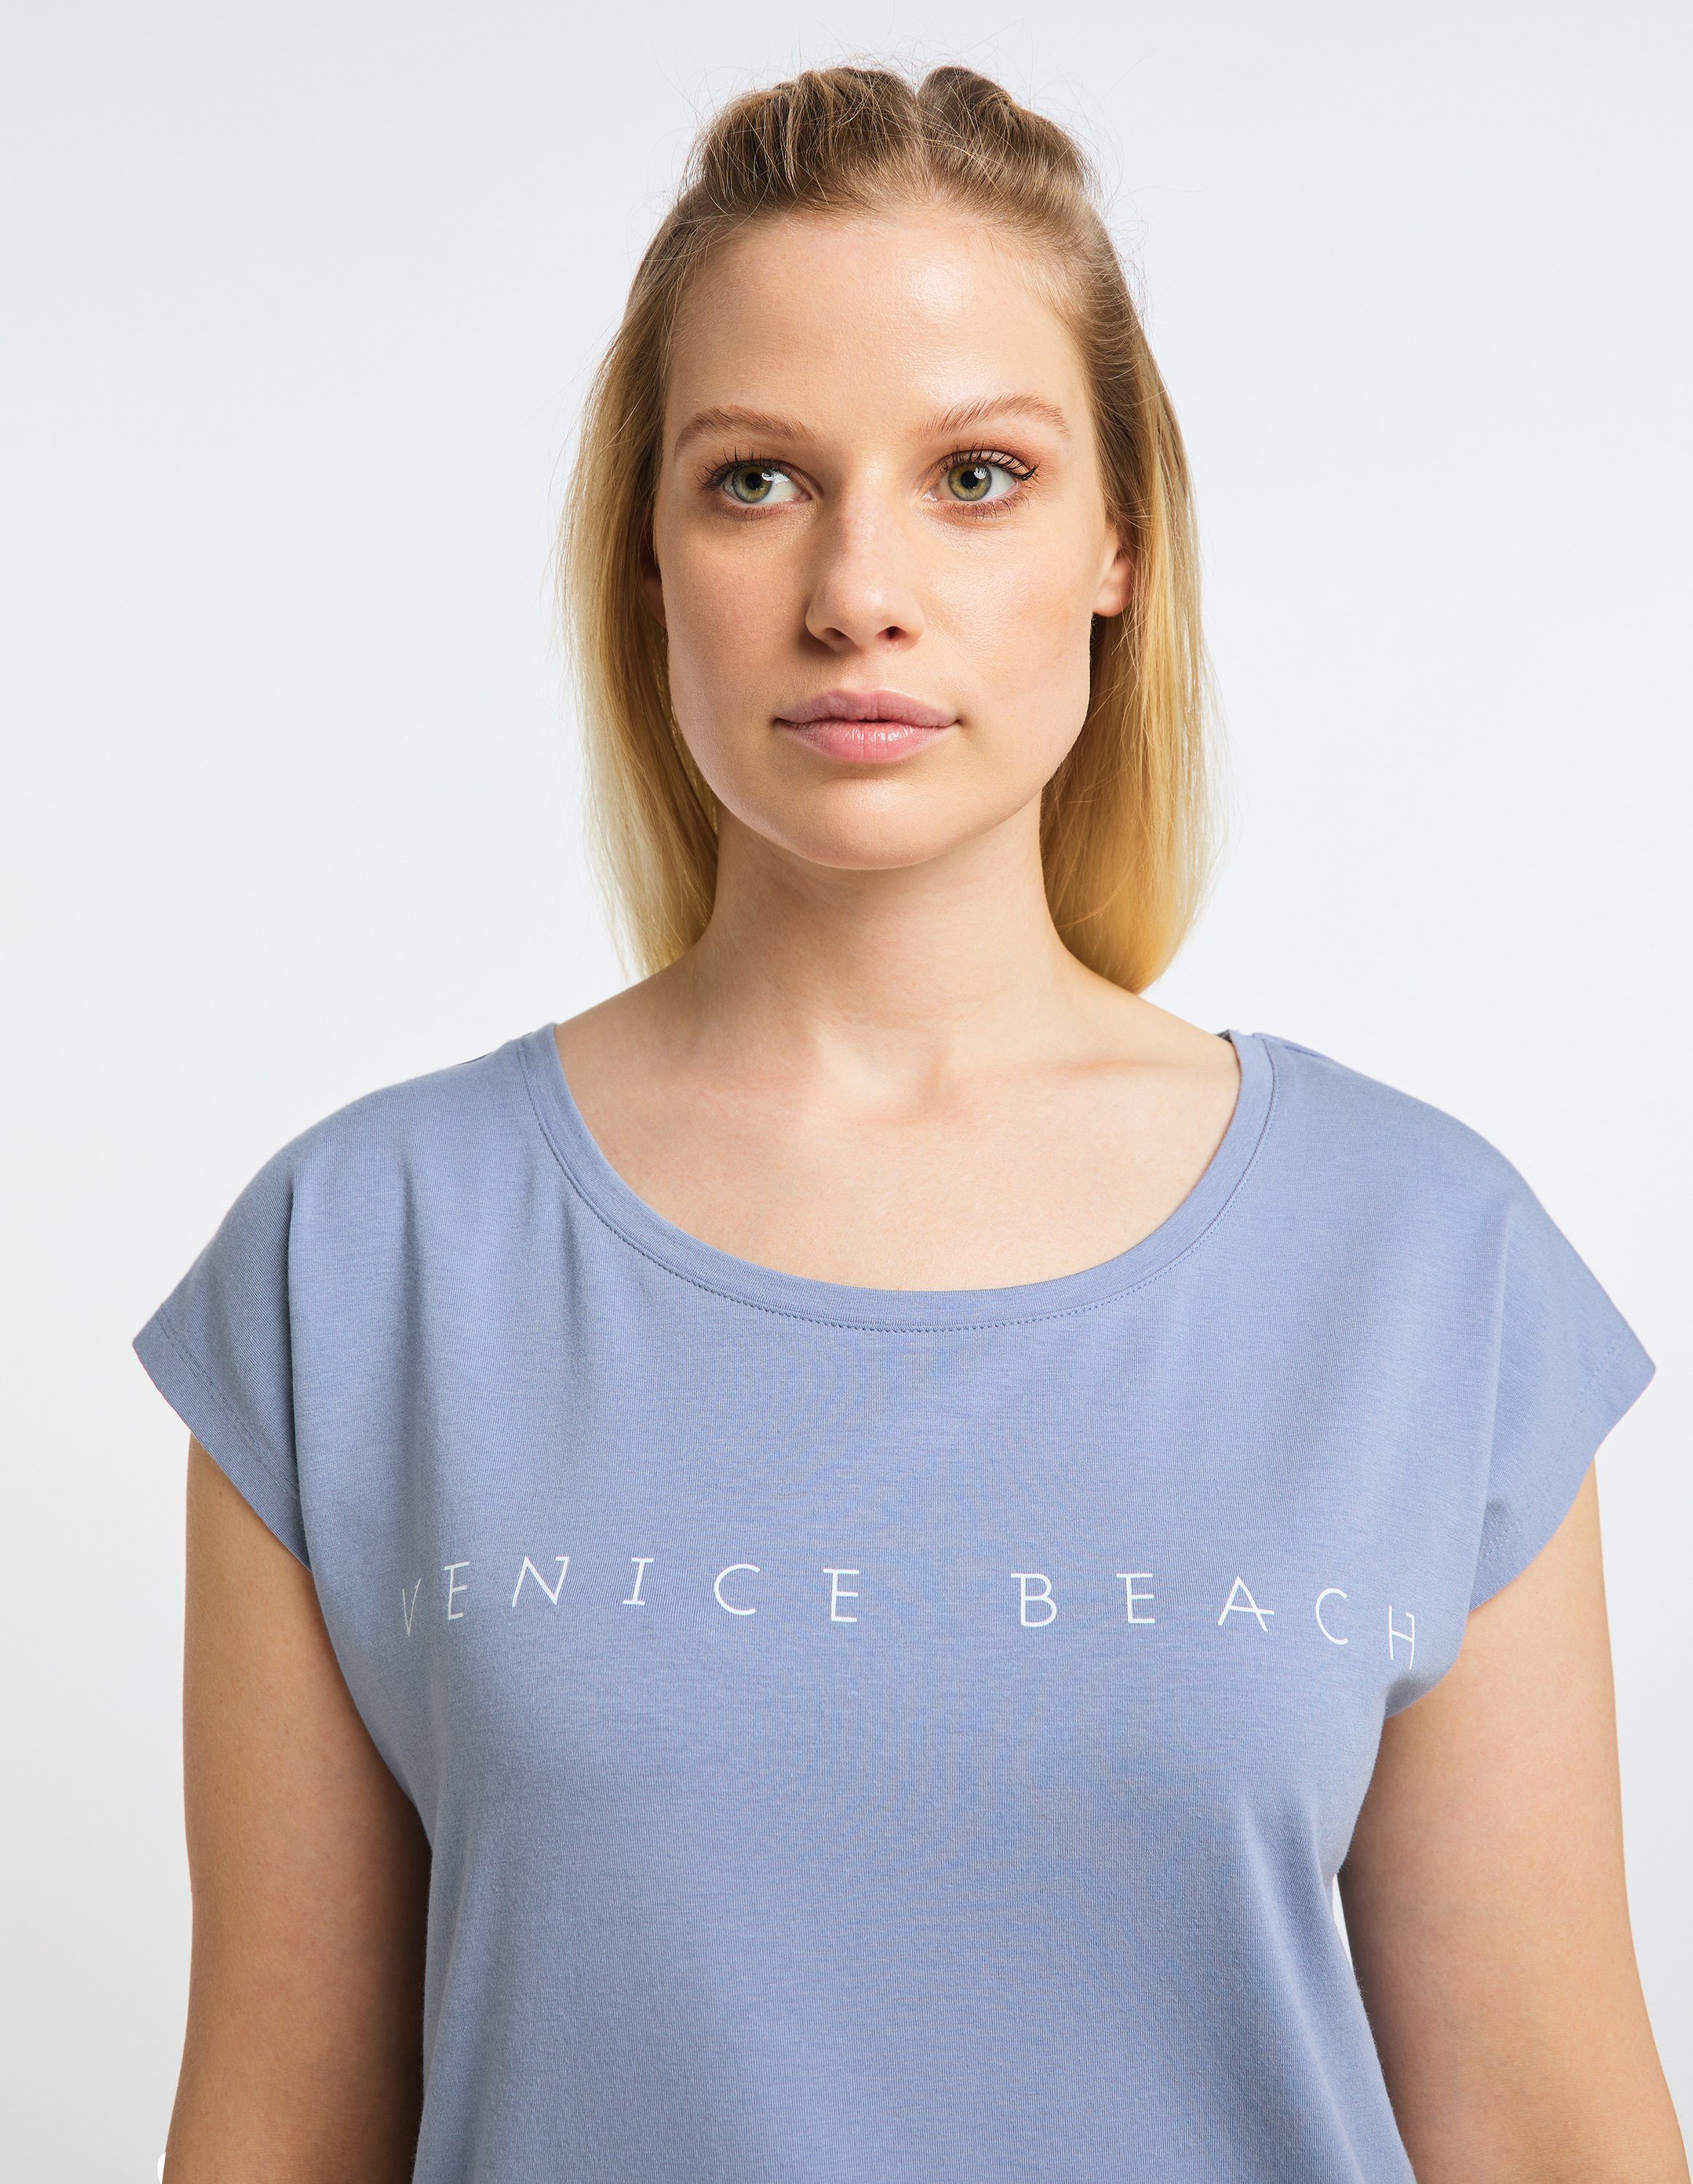 T-Shirt Wonder T-Shirt VB Beach blue delft Venice